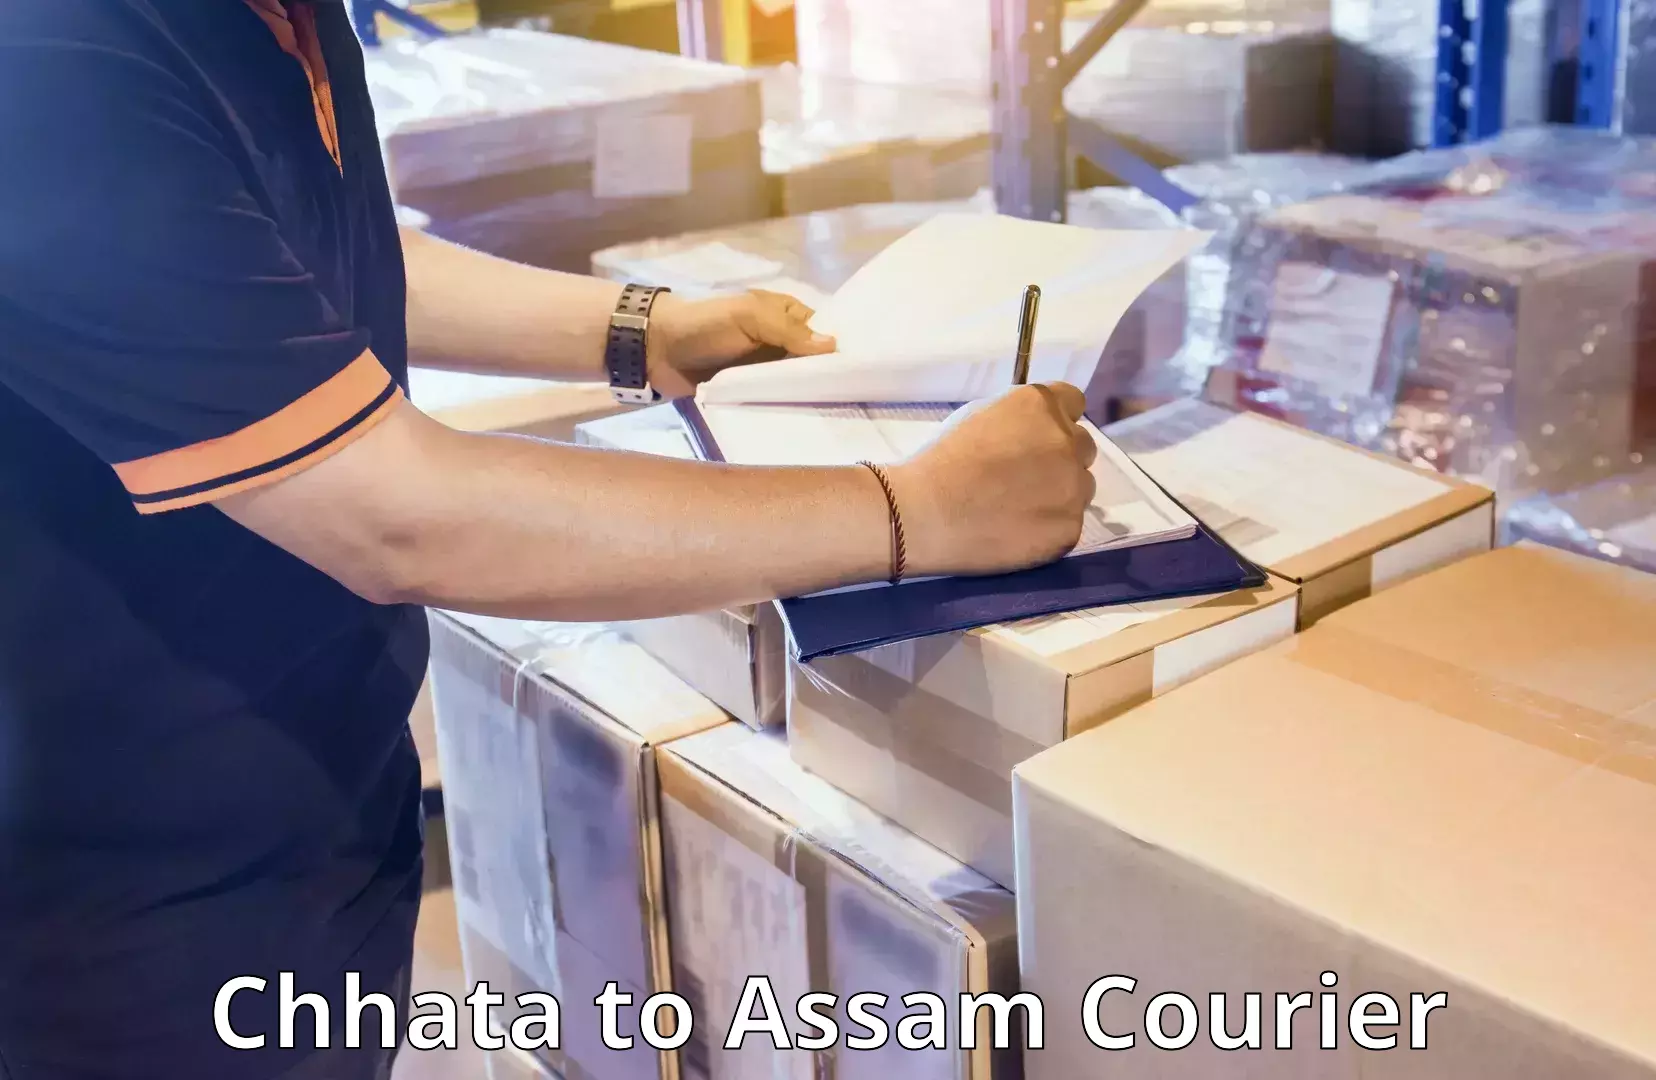 Urgent luggage shipment Chhata to Assam